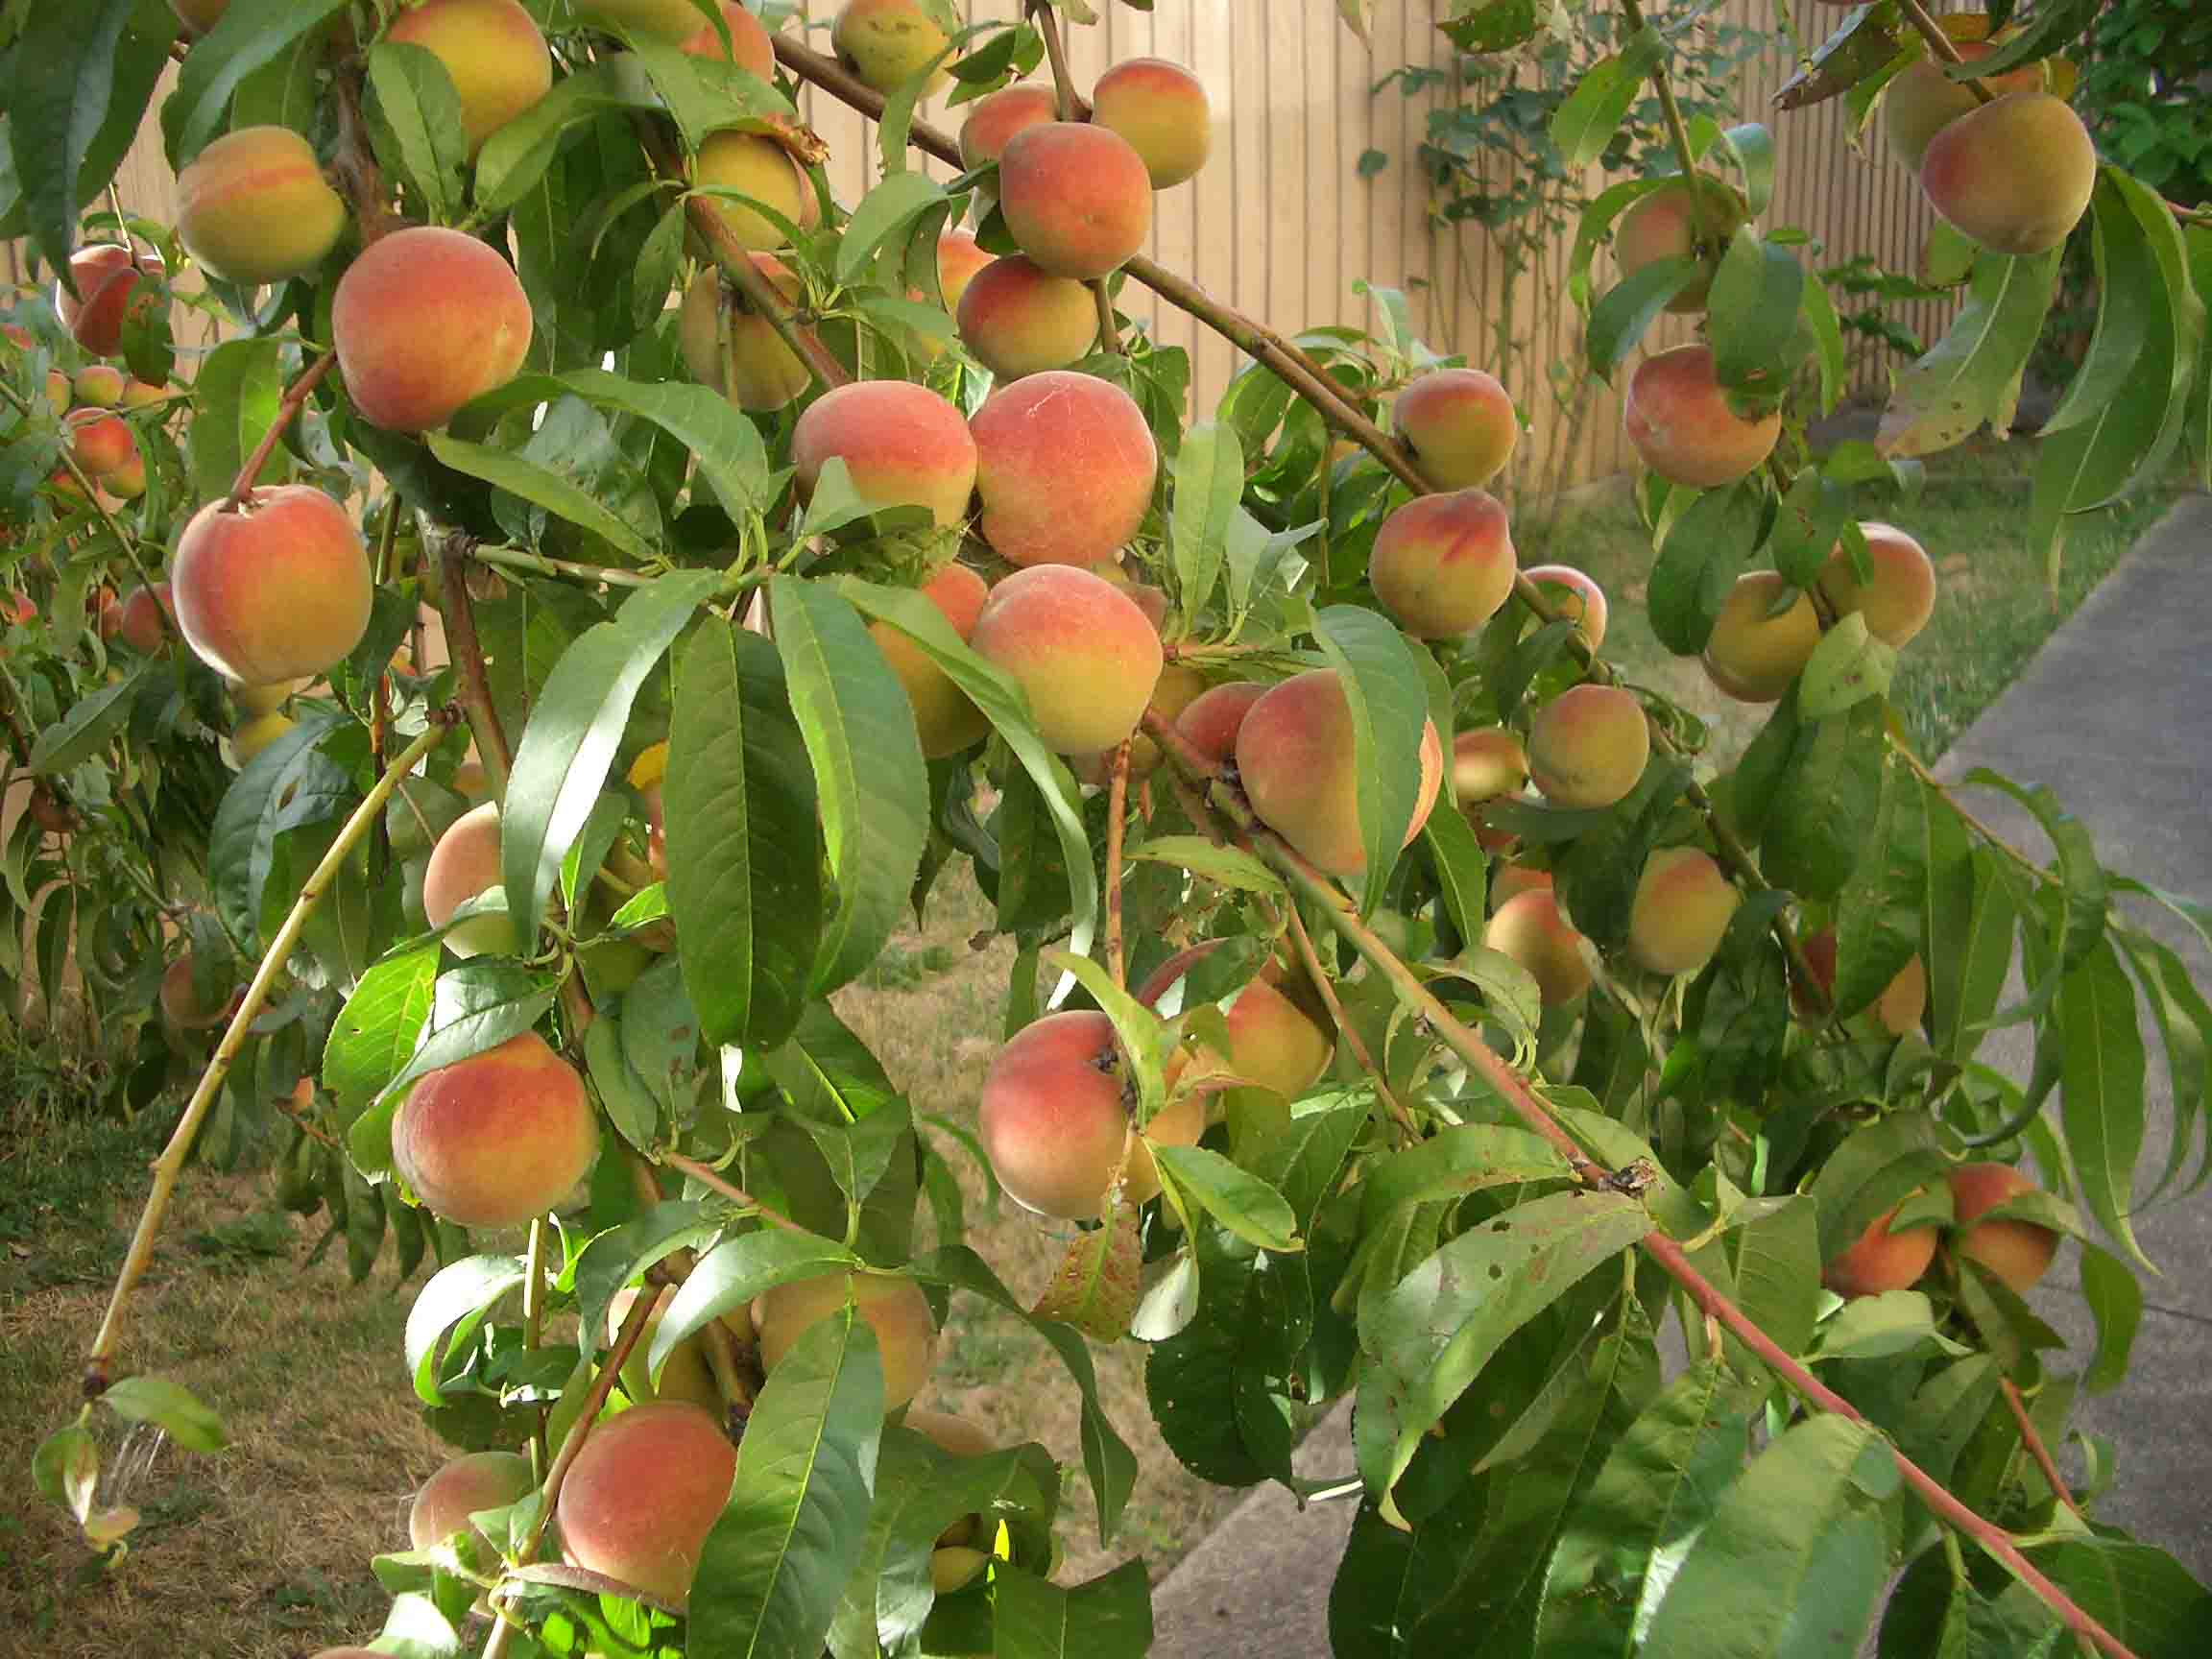 1,桃树:桃木有制百鬼,压百煞的作用,所以在院内栽种桃树或者室内插